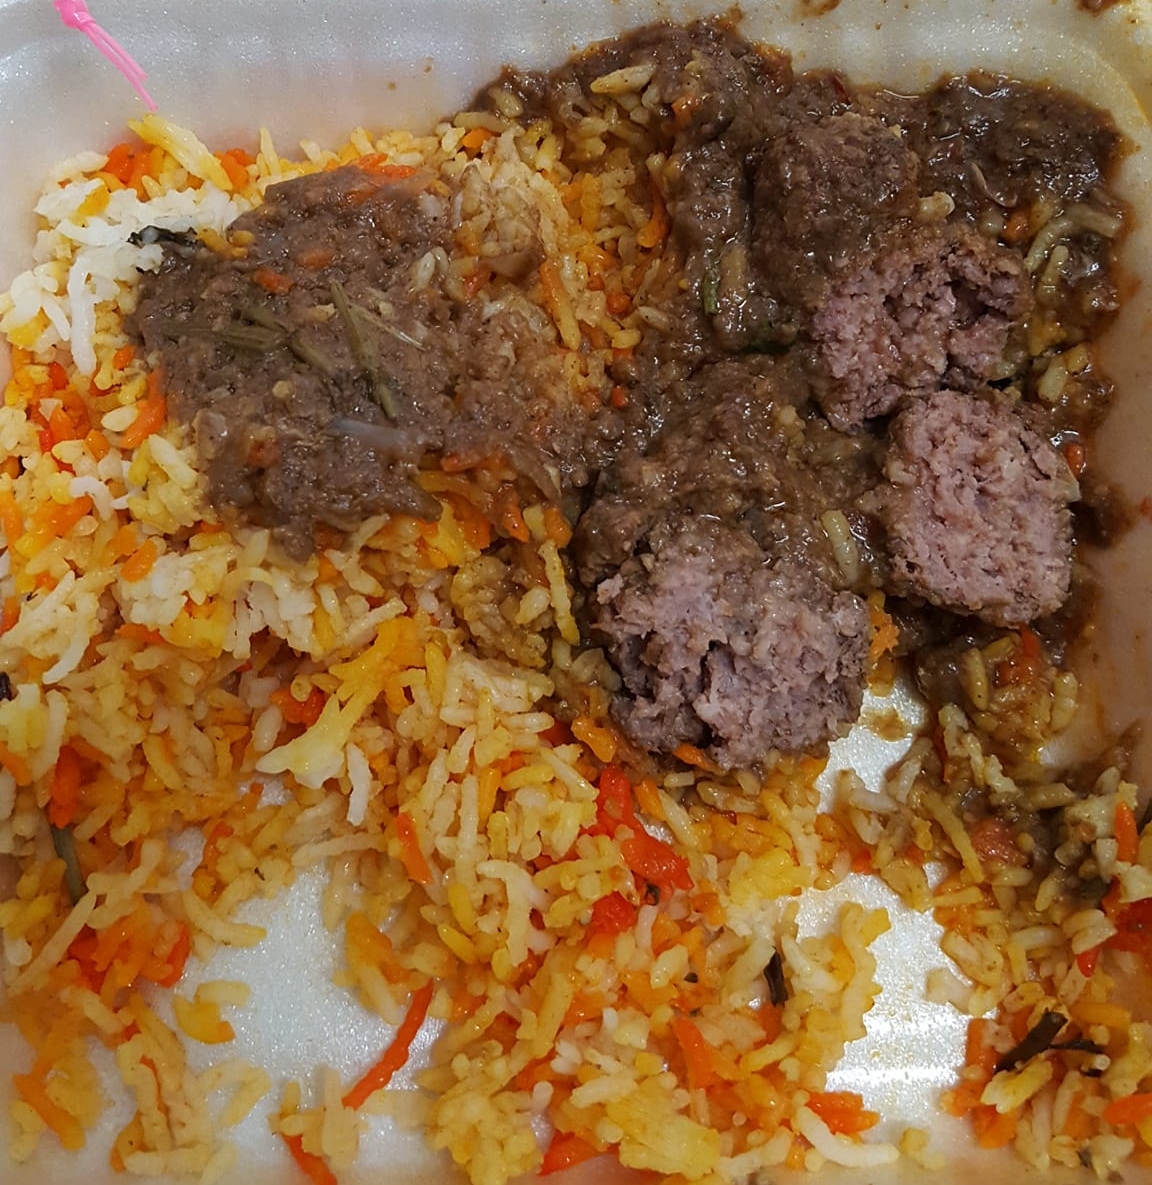 Beli Nasi Briyani Daging Harga RM12, Sekali Dapat Daging Jenis ‘Meatball’ 3 Biji – ‘Ni Semua Jenis Bidan Terjun Berniaga’